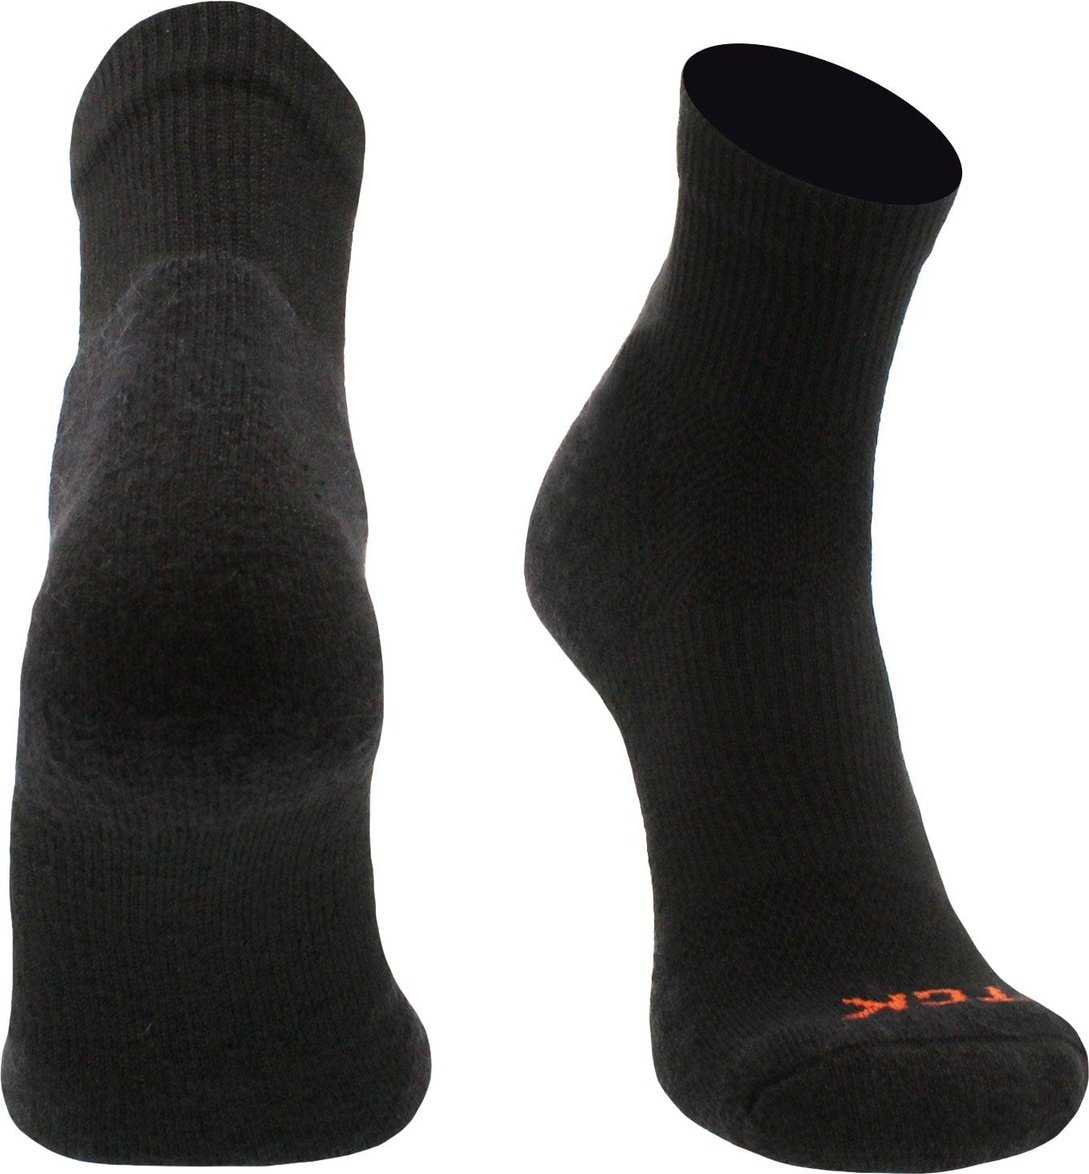 TCK Pickleball Socks Quarter Length Socks - Black - HIT a Double